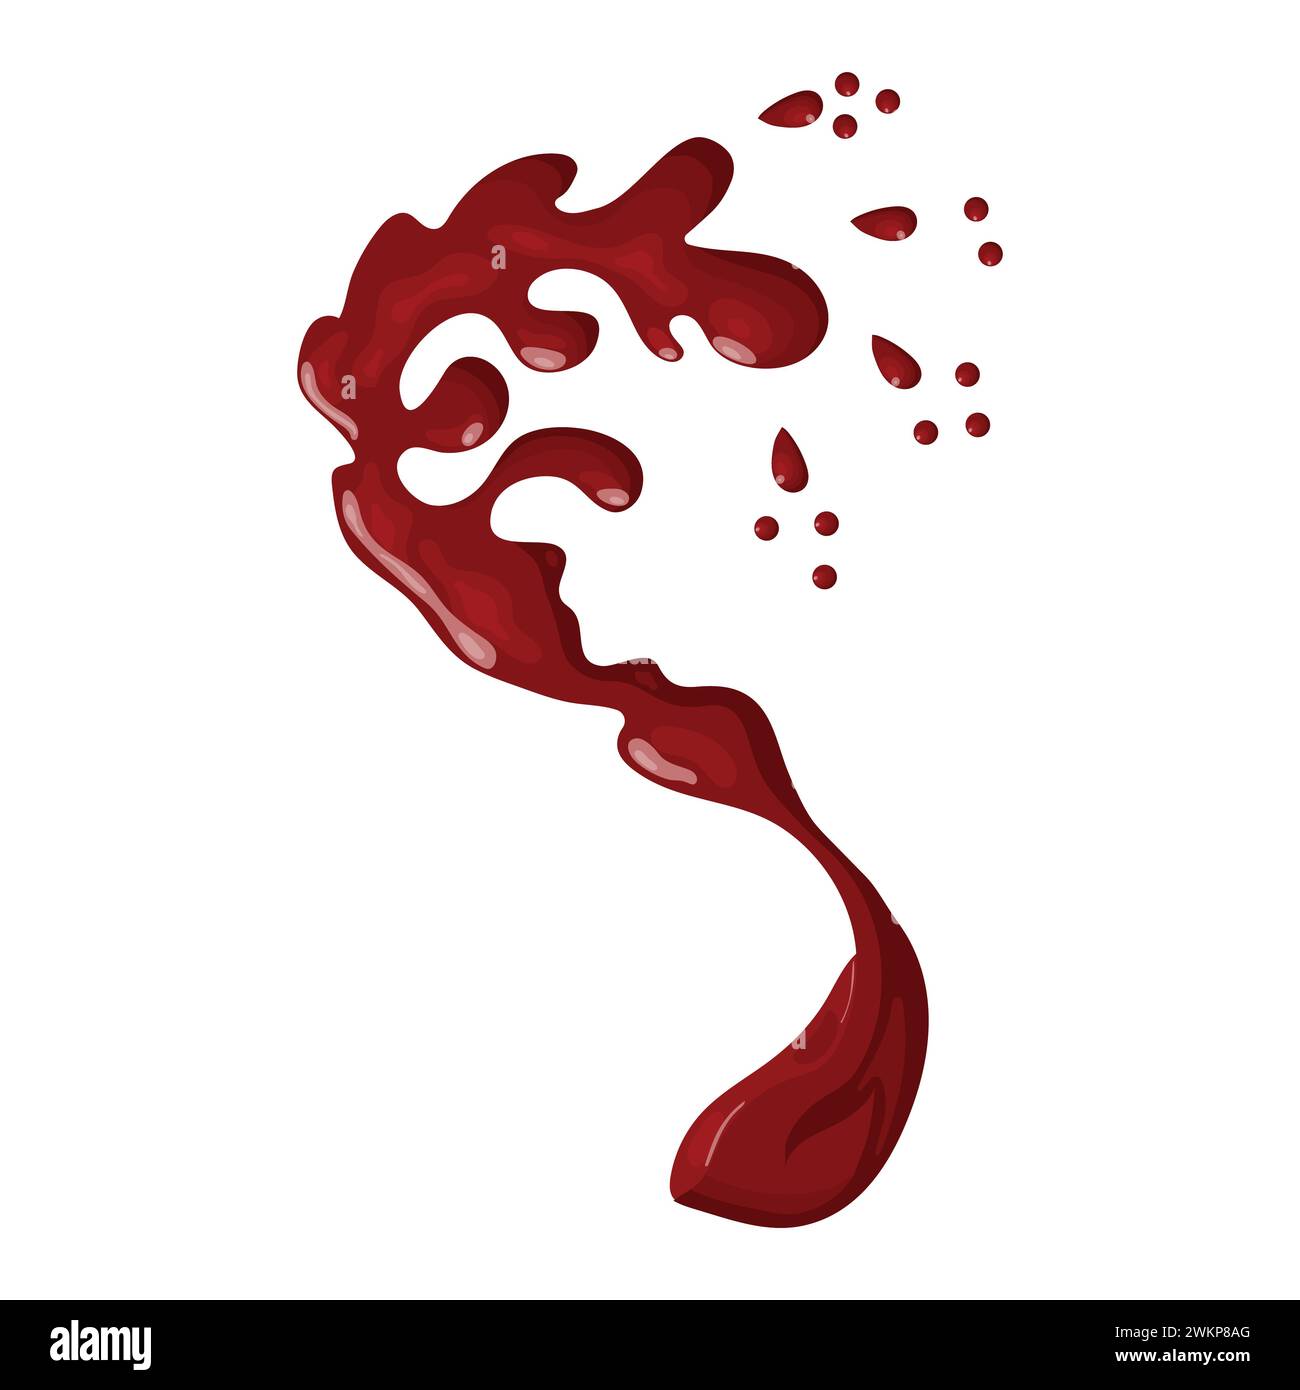 Spruzzo di vino rosso. Illustrazione vettoriale isolata su sfondo bianco. Illustrazione Vettoriale